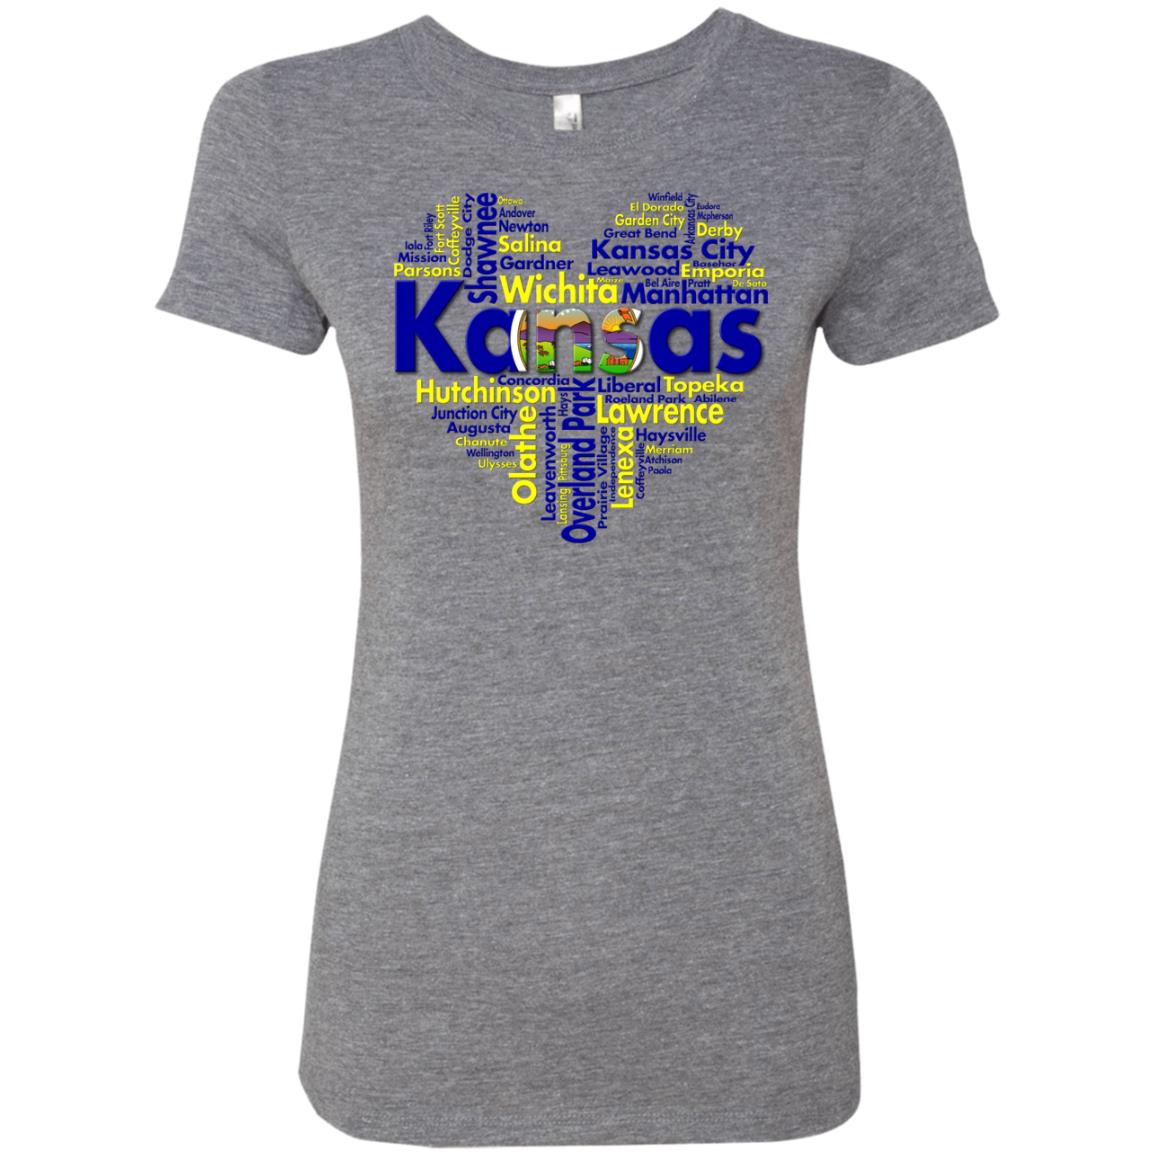 Kansas City Heart T Shirt - T-shirt Teezalo